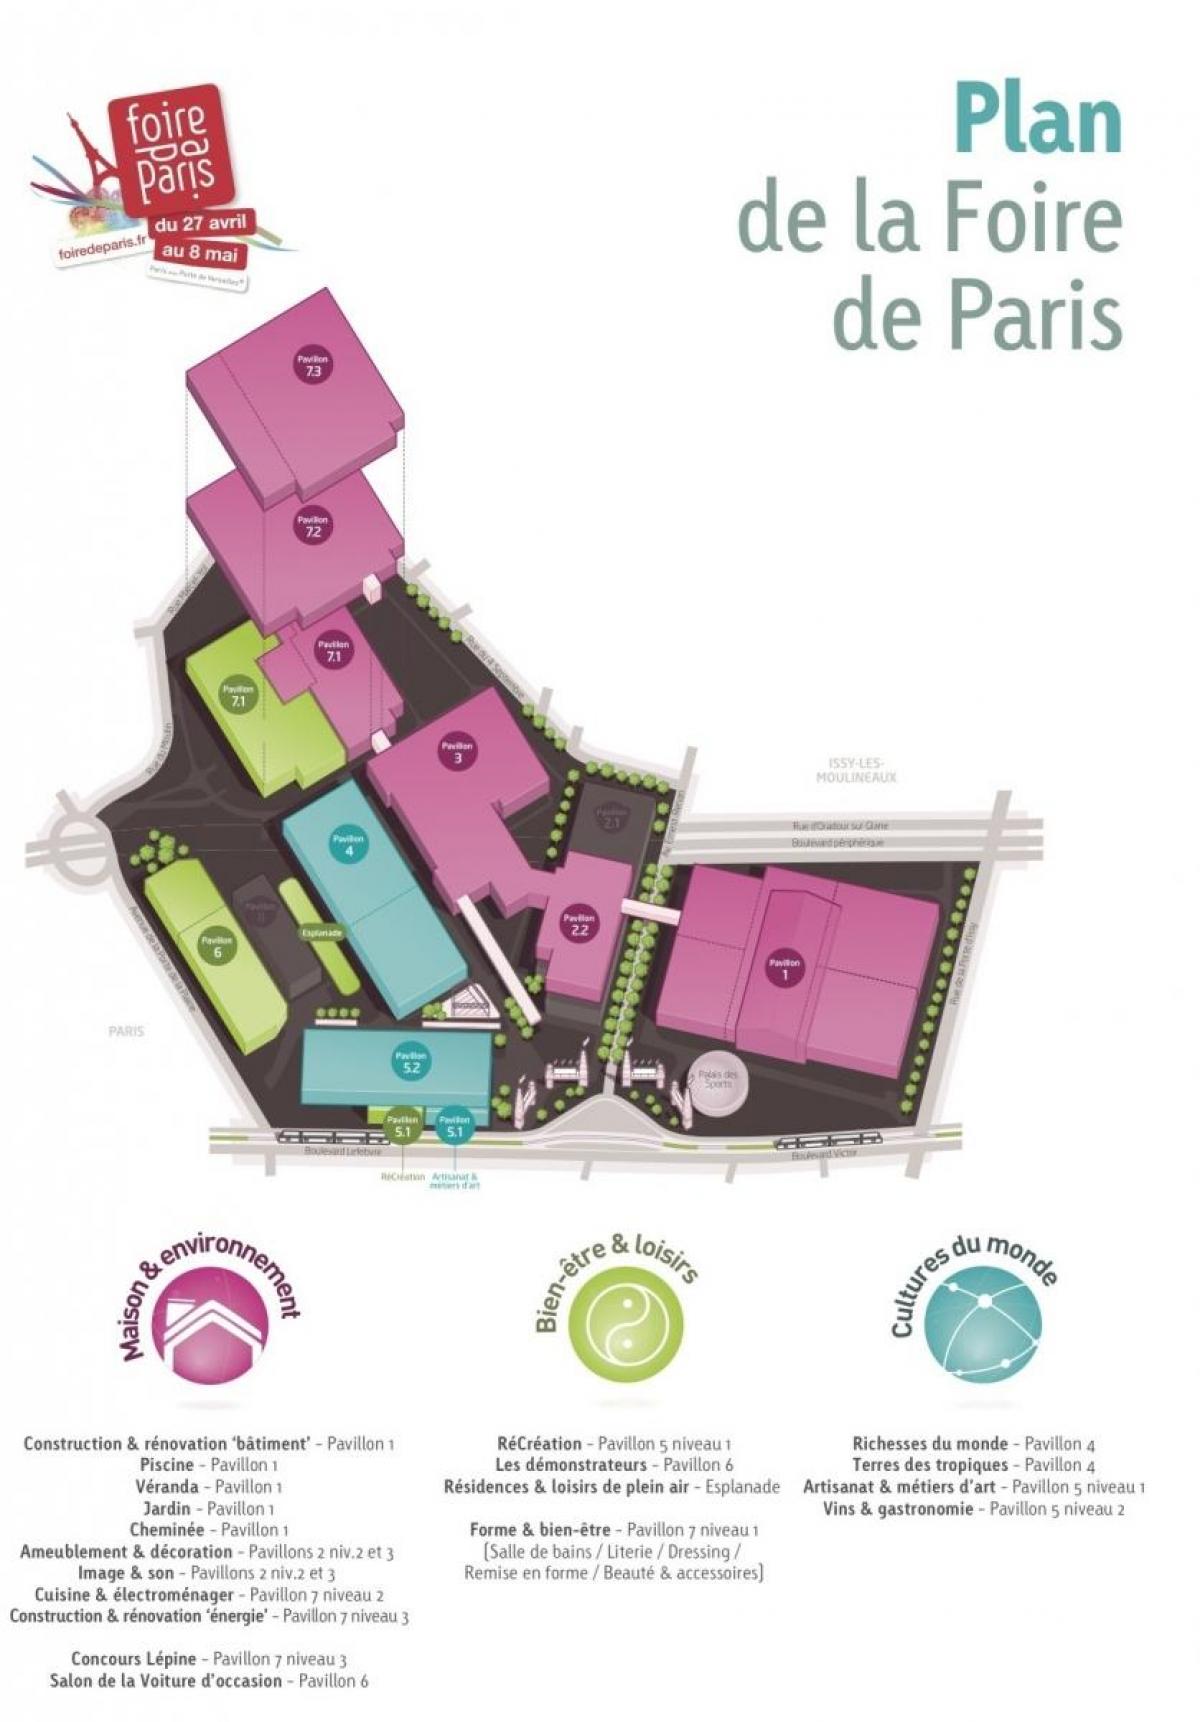 Map of The Foire de Paris